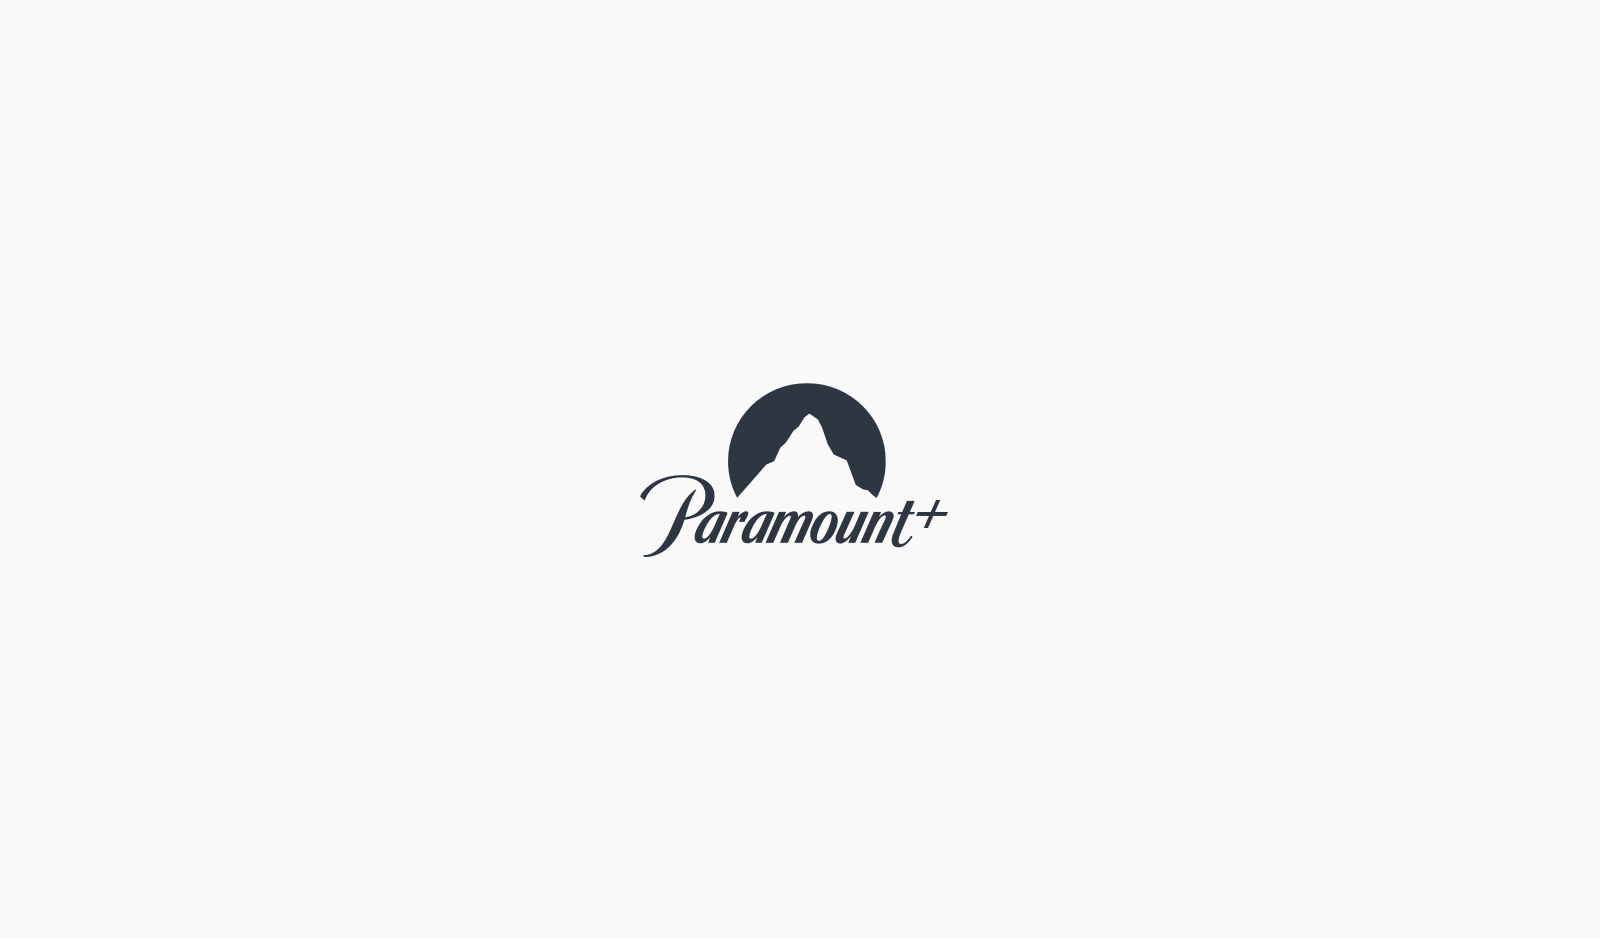 Paramount_03c